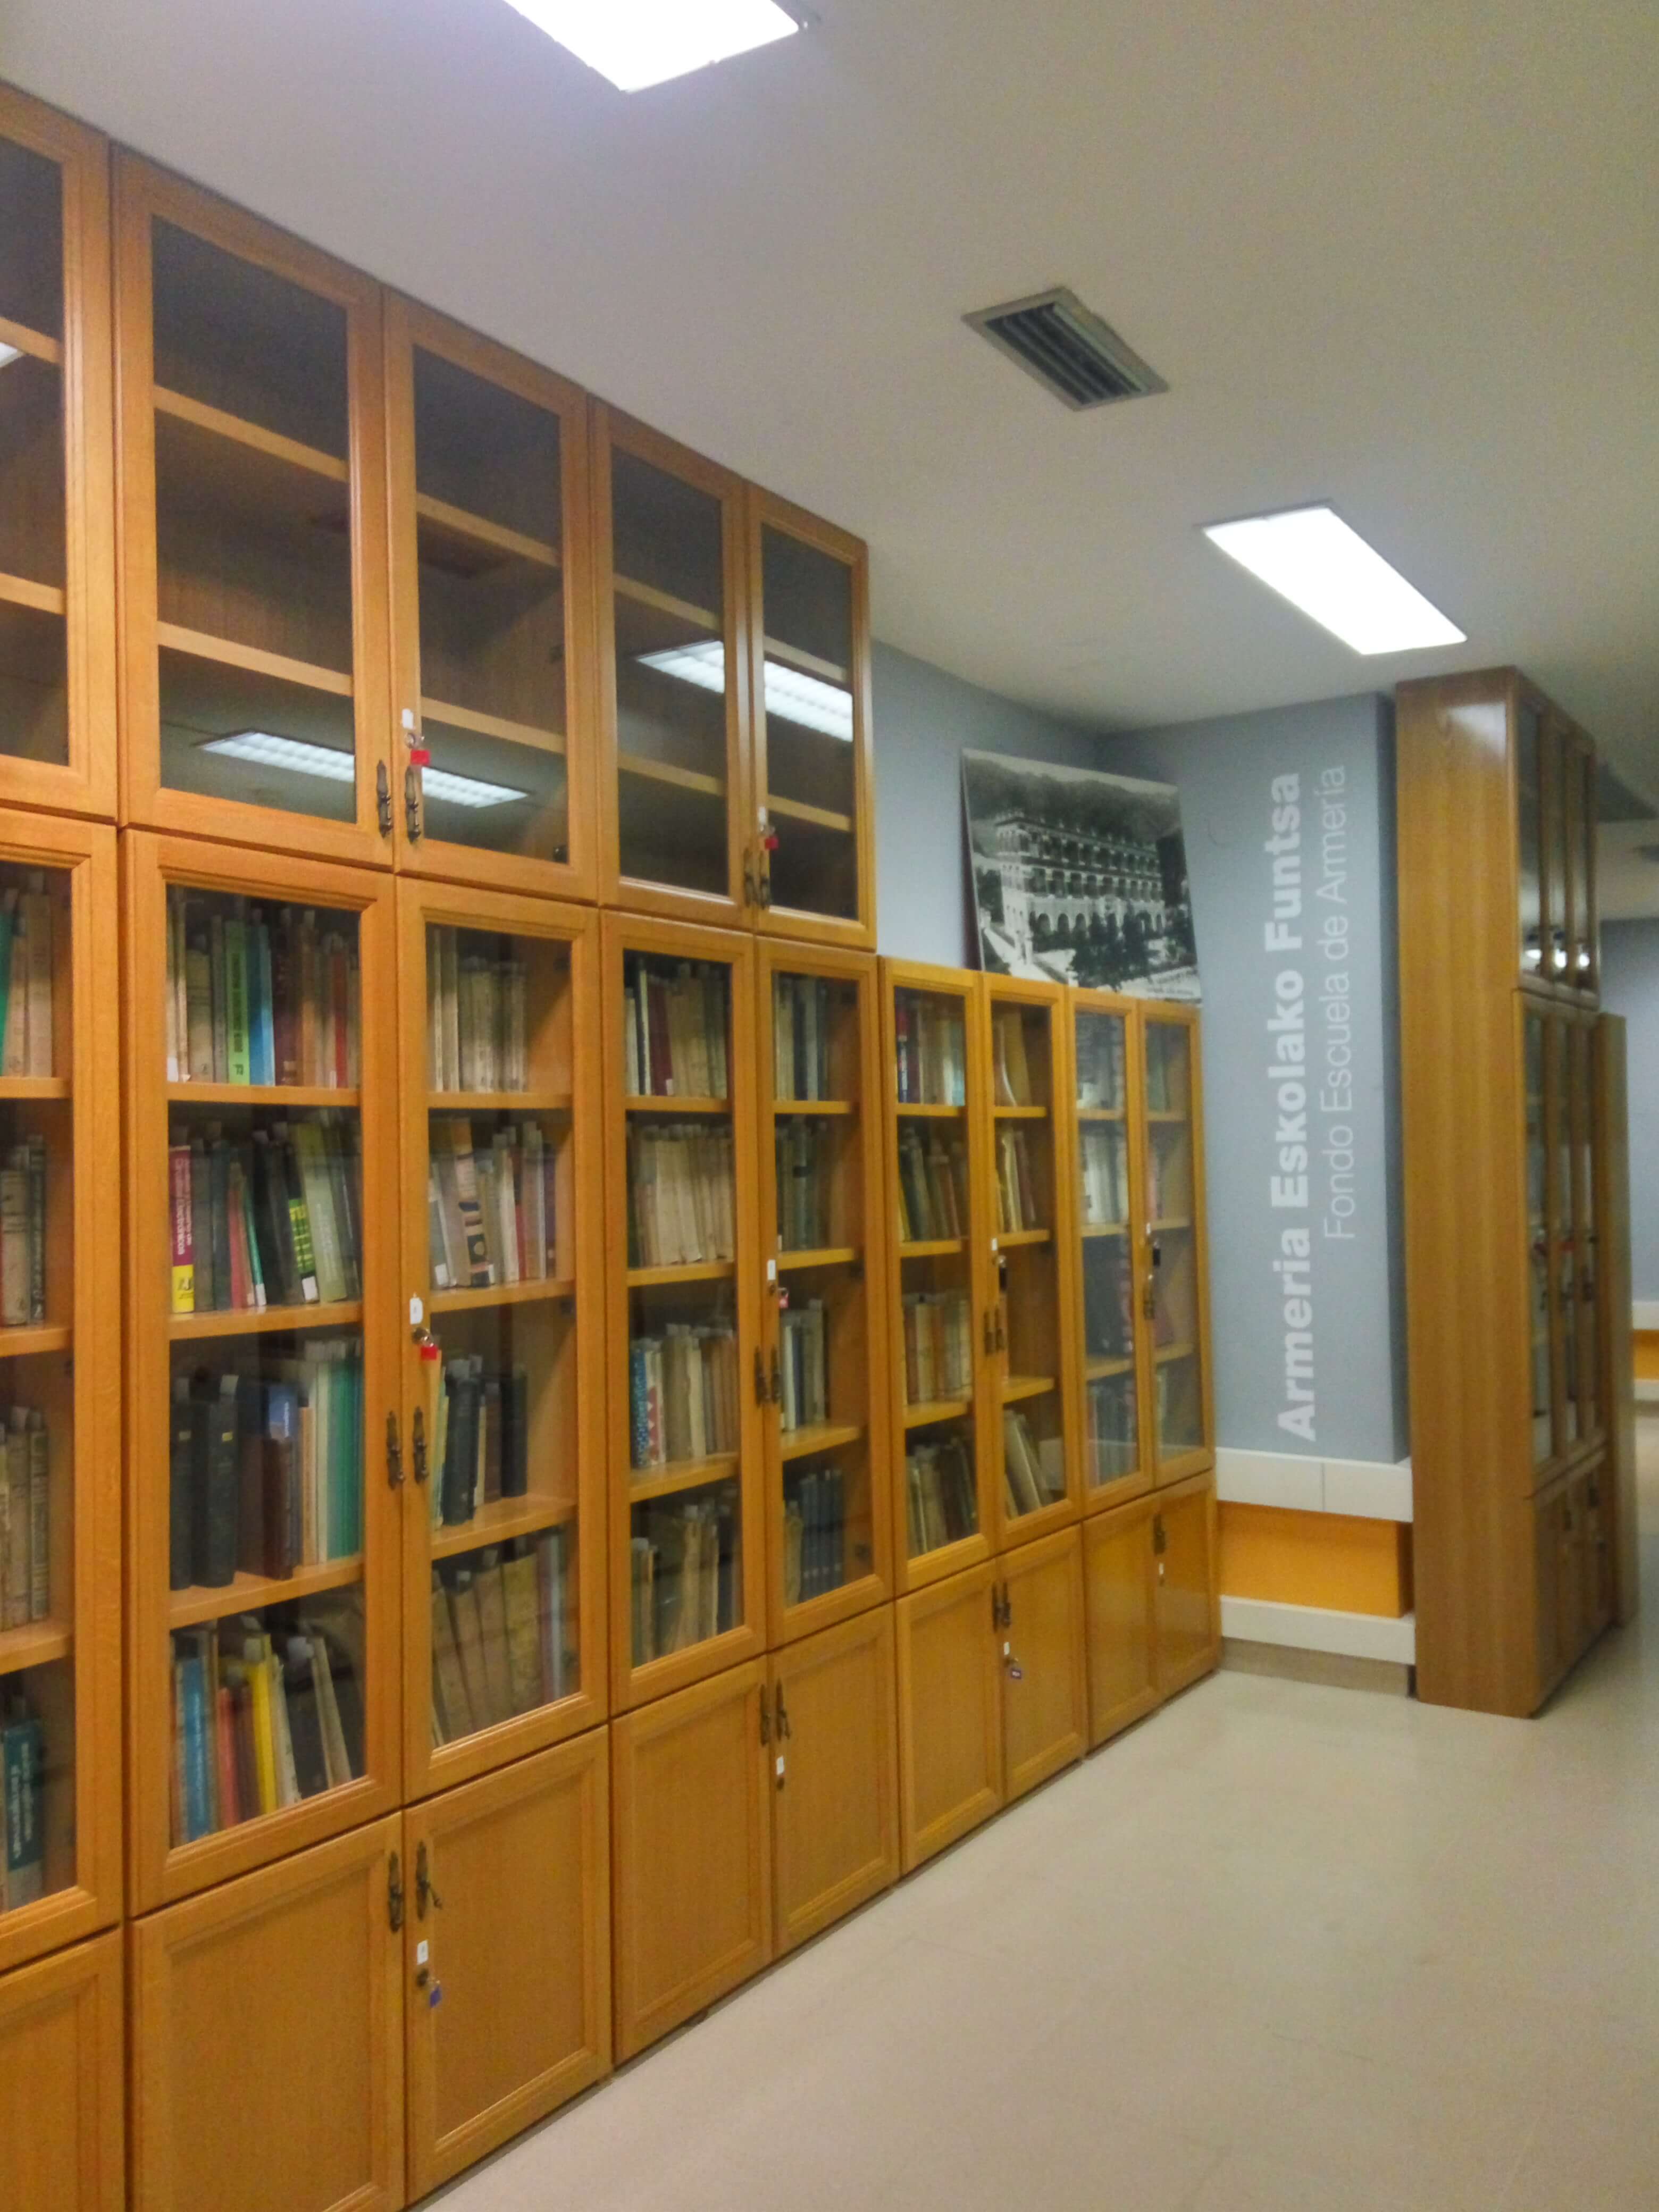 La Escuela de Armería cede parte de su fondo bibliográfico a la Biblioteca Municipal Juan San Martín